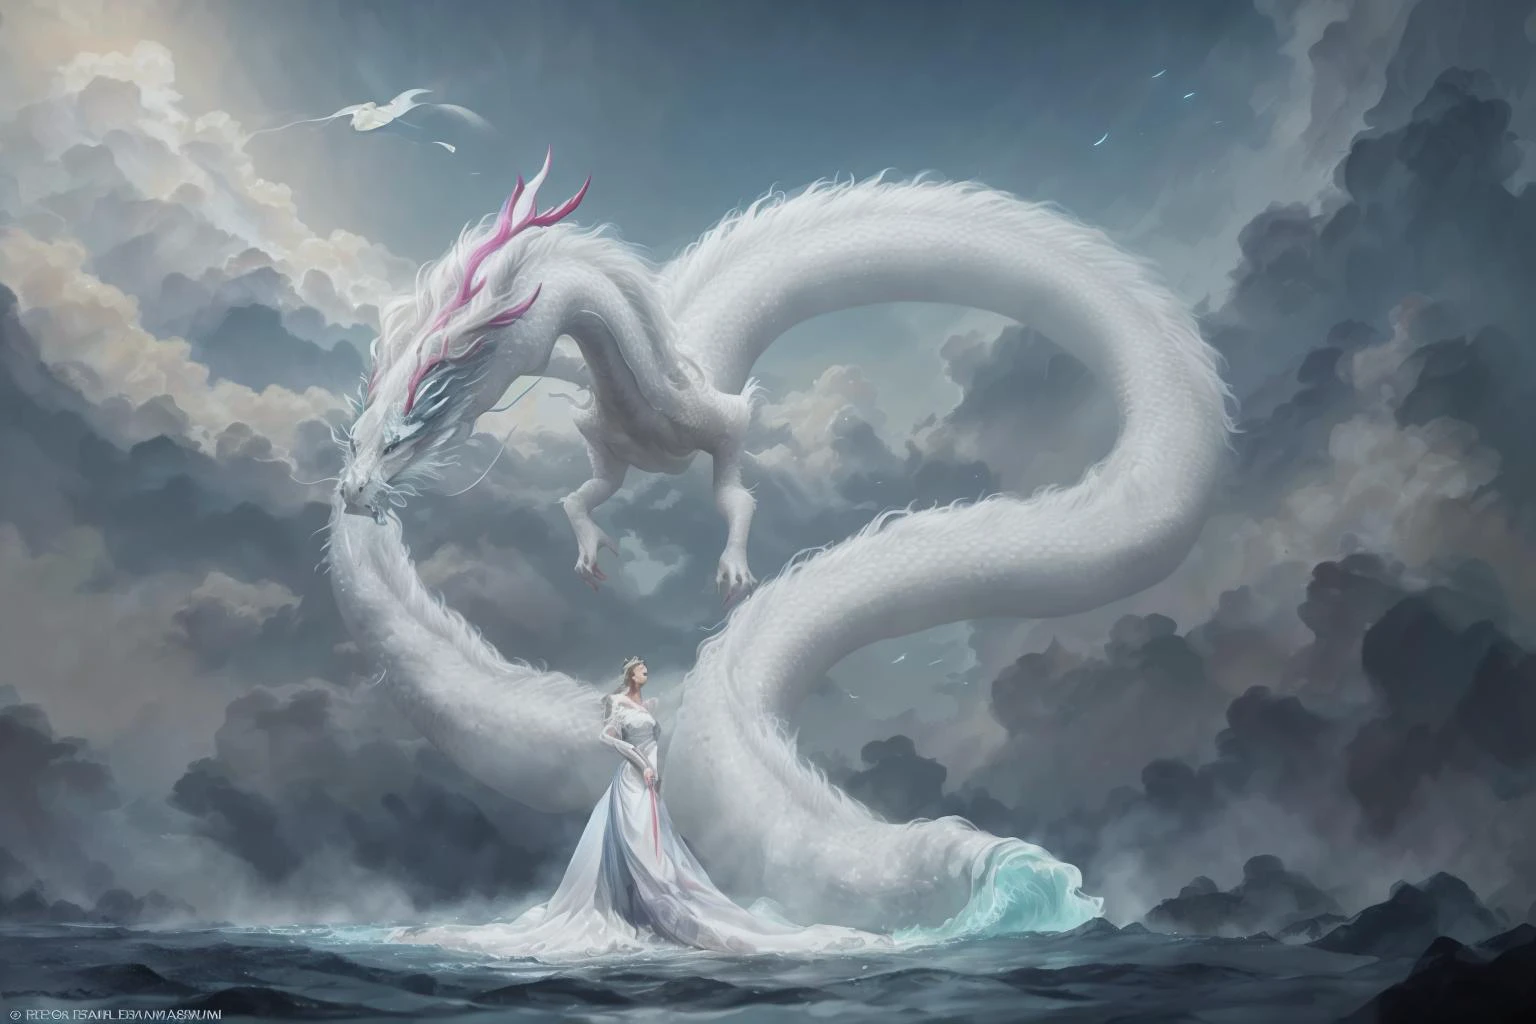 Em uma imagem cativante, uma mulher elegante vestida com um vestido chinês branco desliza pelo céu sobre um mítico dragão chinês. Enquanto eles atravessam os céus, seu vestido esvoaçante e as escamas iridescentes do dragão criam uma visão hipnotizante de harmonia e beleza sobrenatural. 
hdr, (fotorrealismo, qualidade de obra-prima, melhor qualidade), , pureerosface_v1,ulzzang-6500-v1.1,